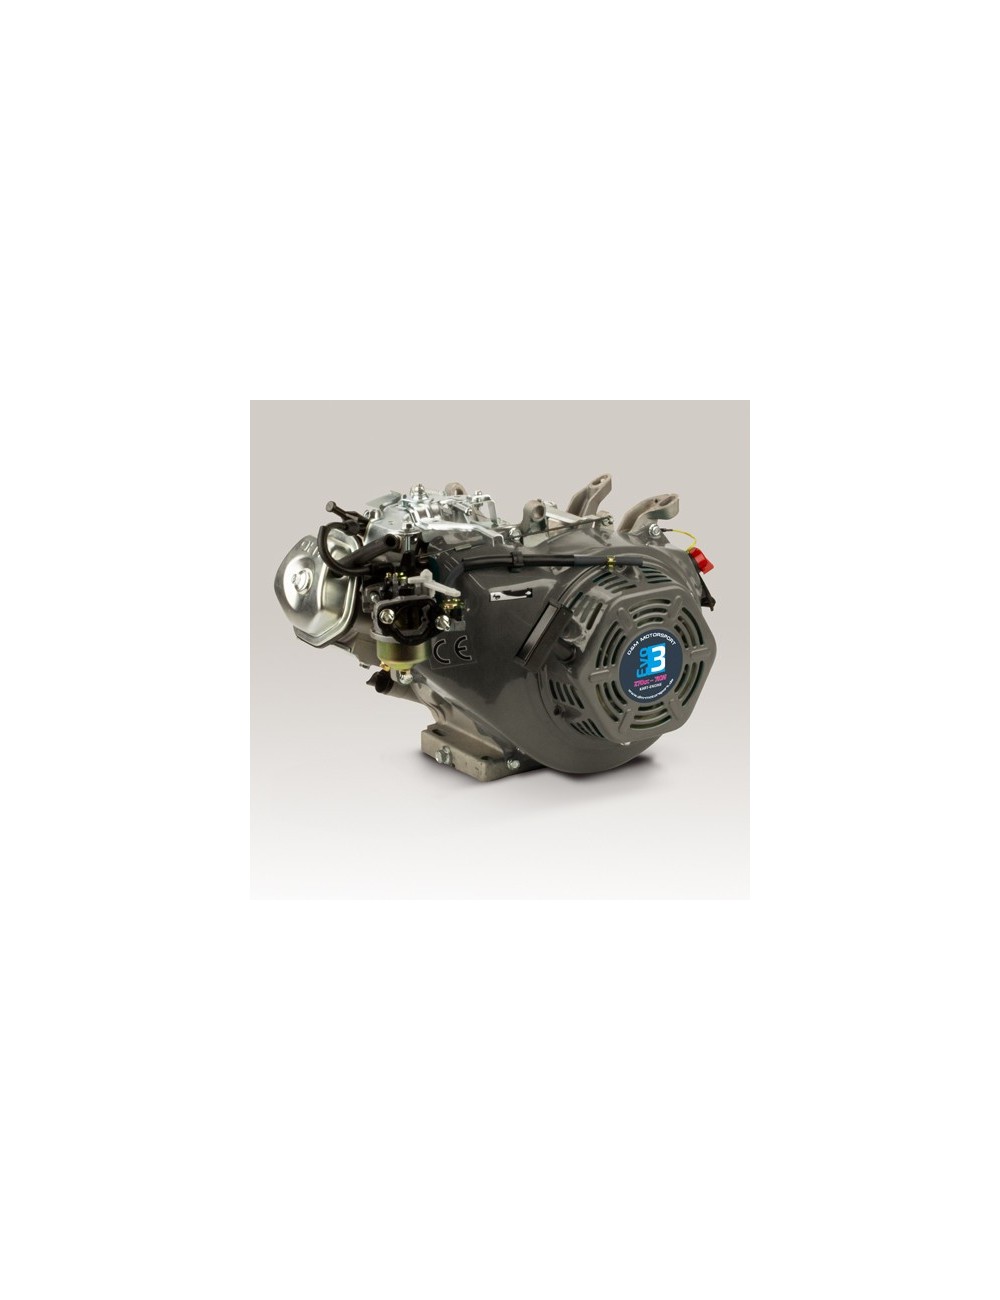 Magick moteur DM 270cc Evo2 7KW